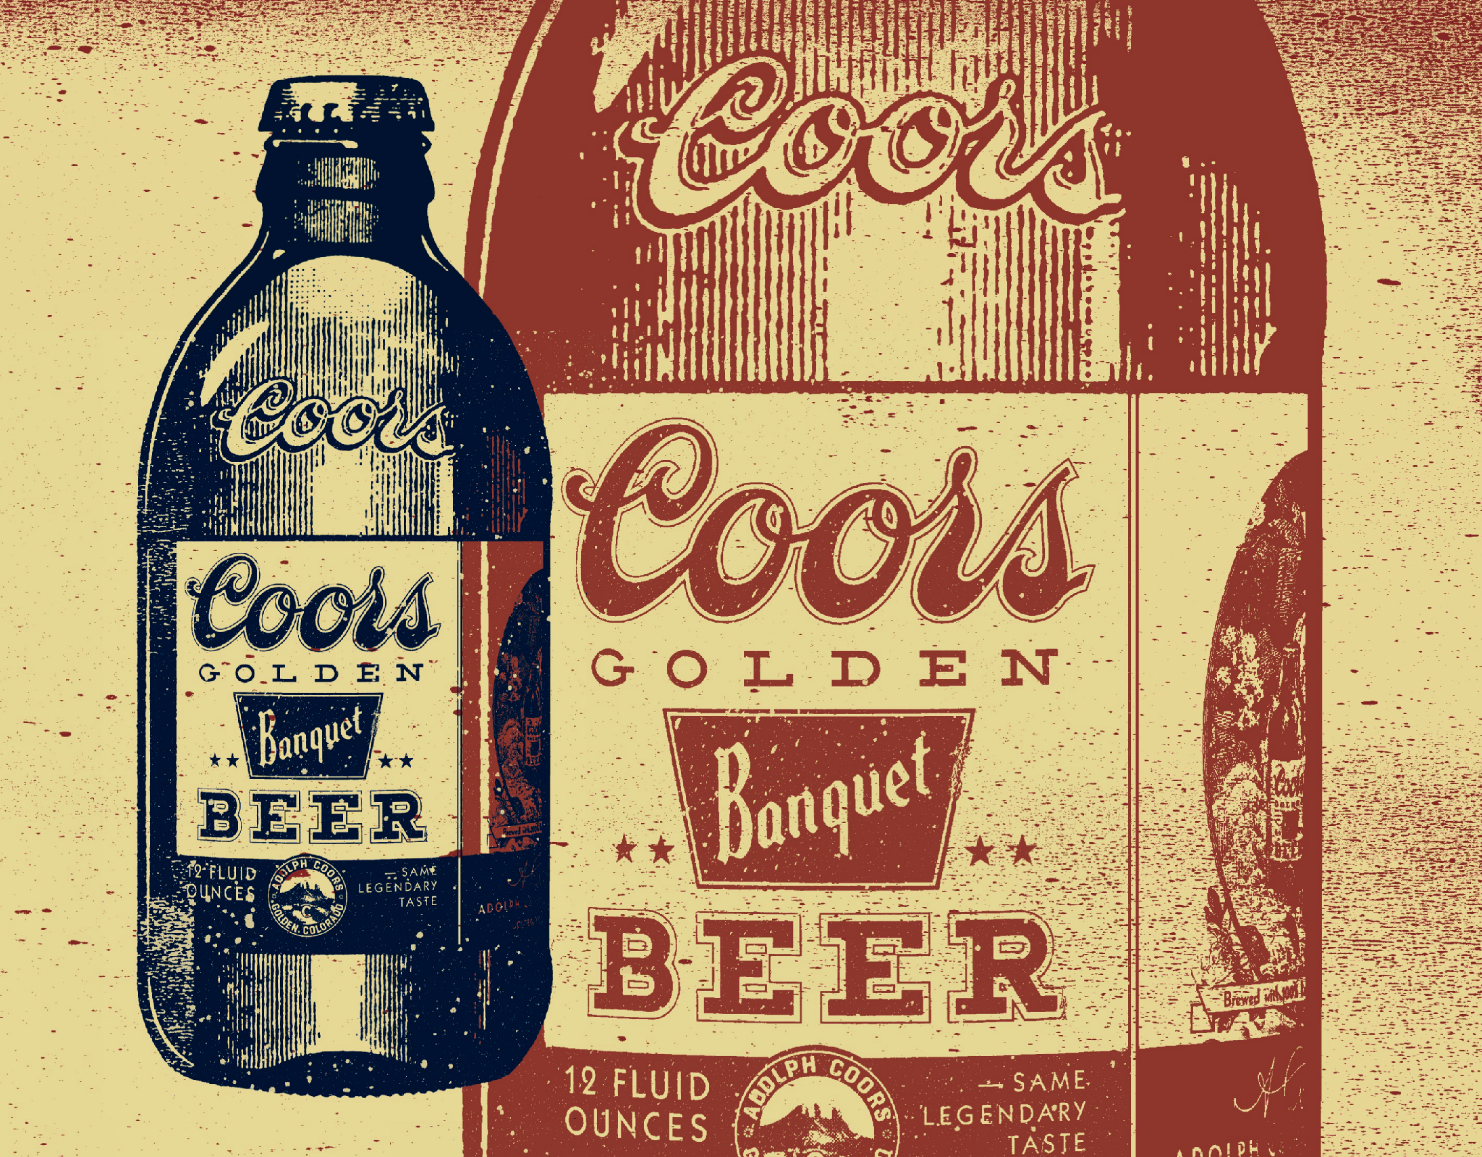 Got beer. Пиво золотой век. Coors Banquet. Пиво вкус СССР. Get Lost пиво.